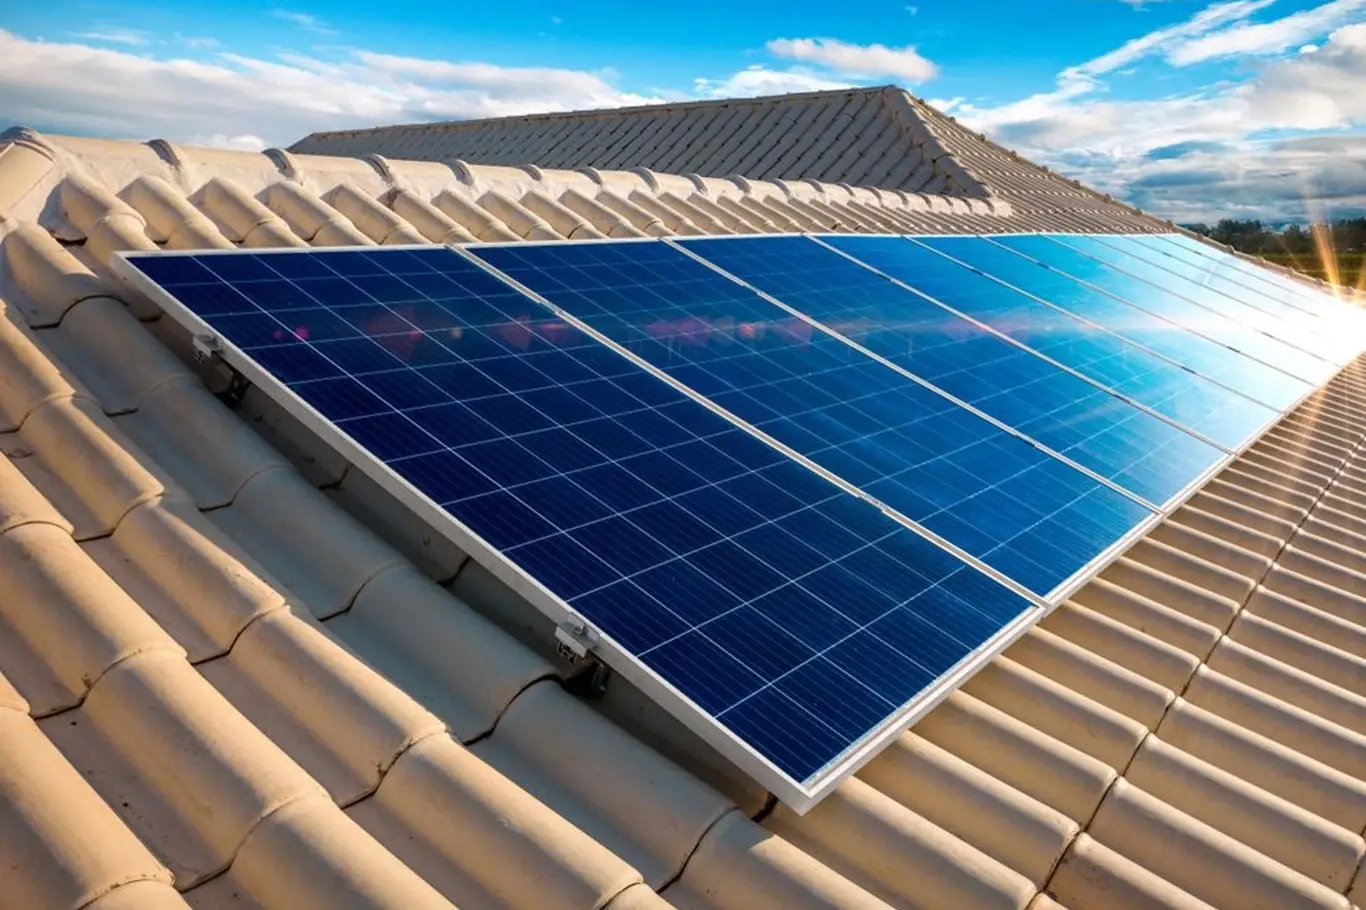 Solární panely vyrábějící elektřinu se na střechách objevují stále častěji